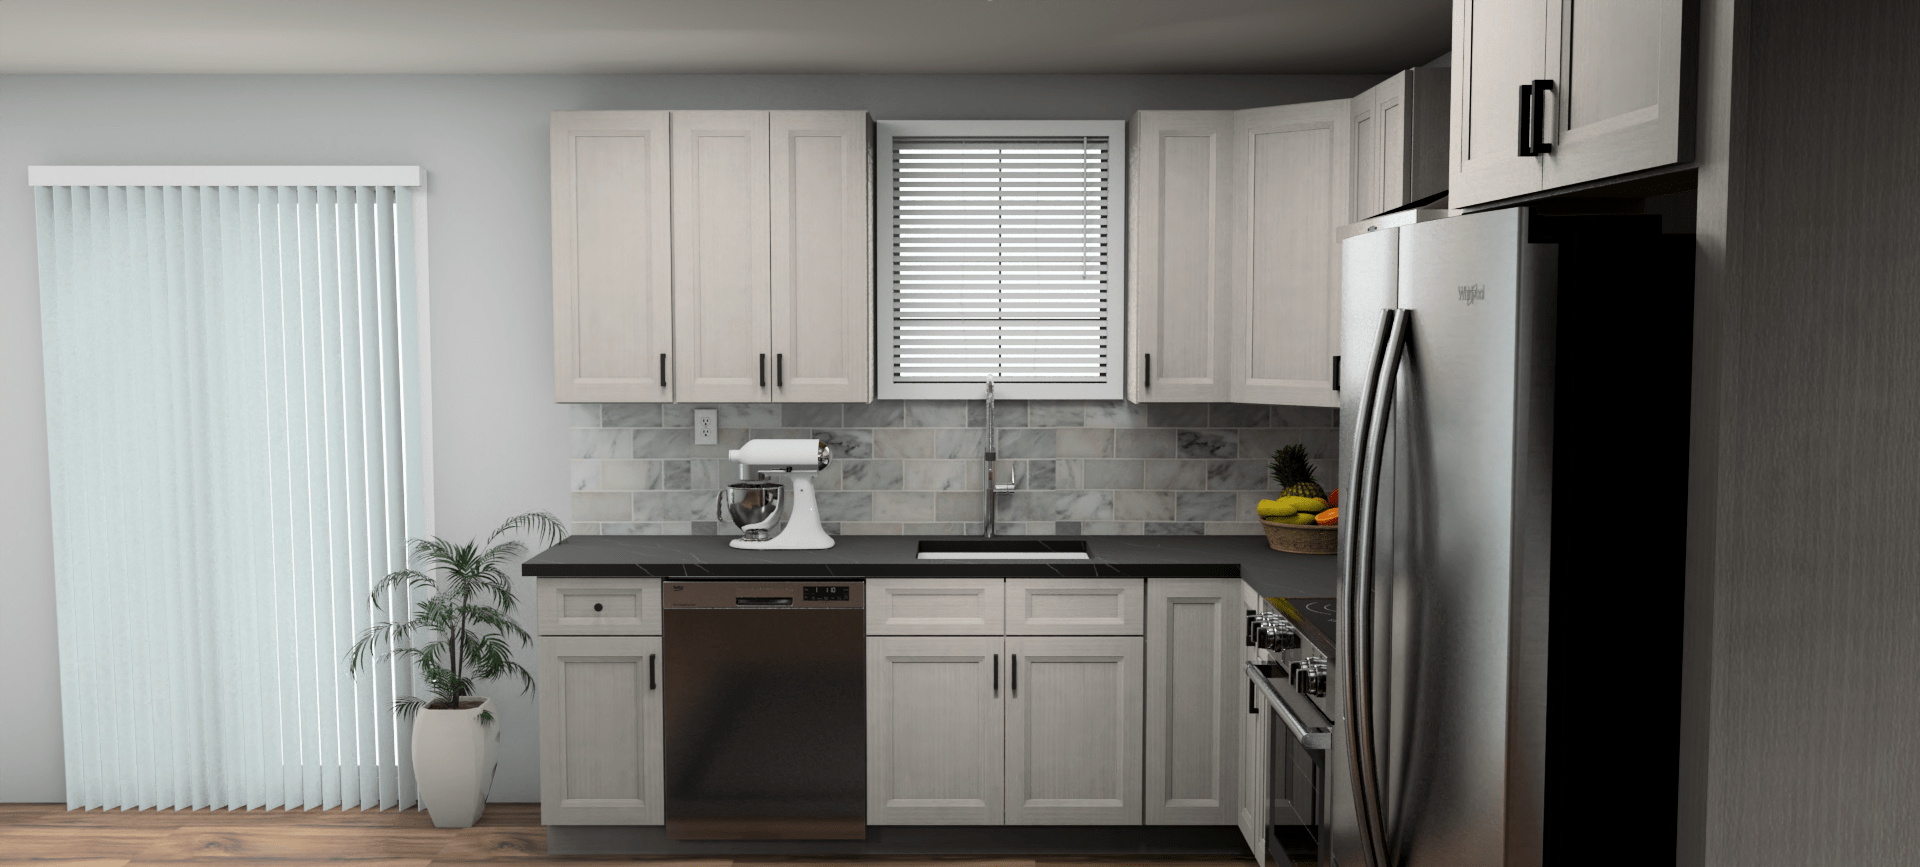 Fabuwood Allure Onyx Horizon 9 x 12 L Shaped Kitchen Side Layout Photo